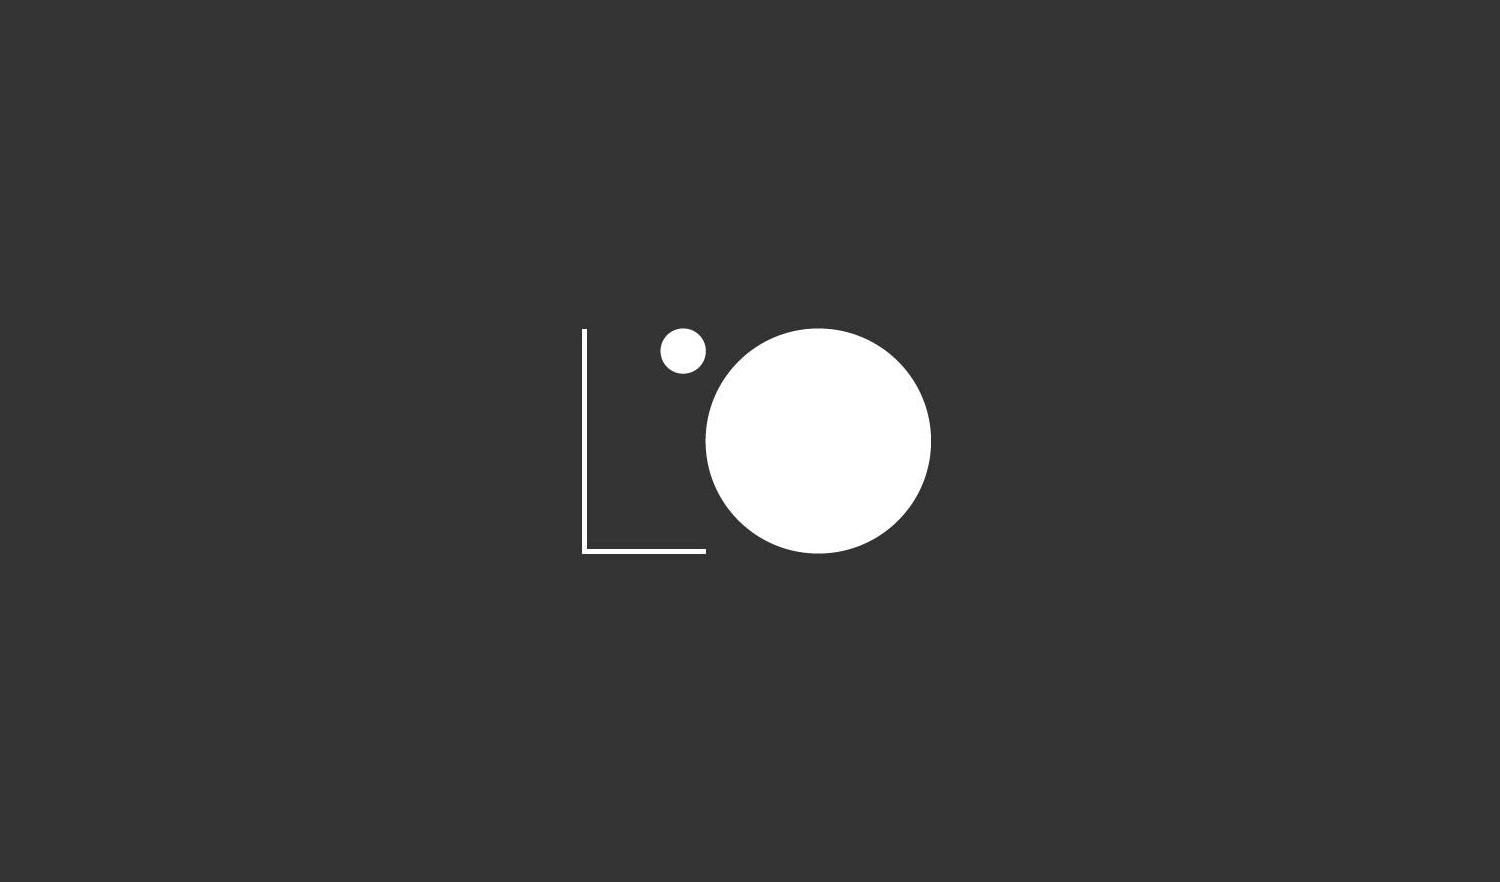 Logo for L'Observatoire International by New York based design studio Triboro